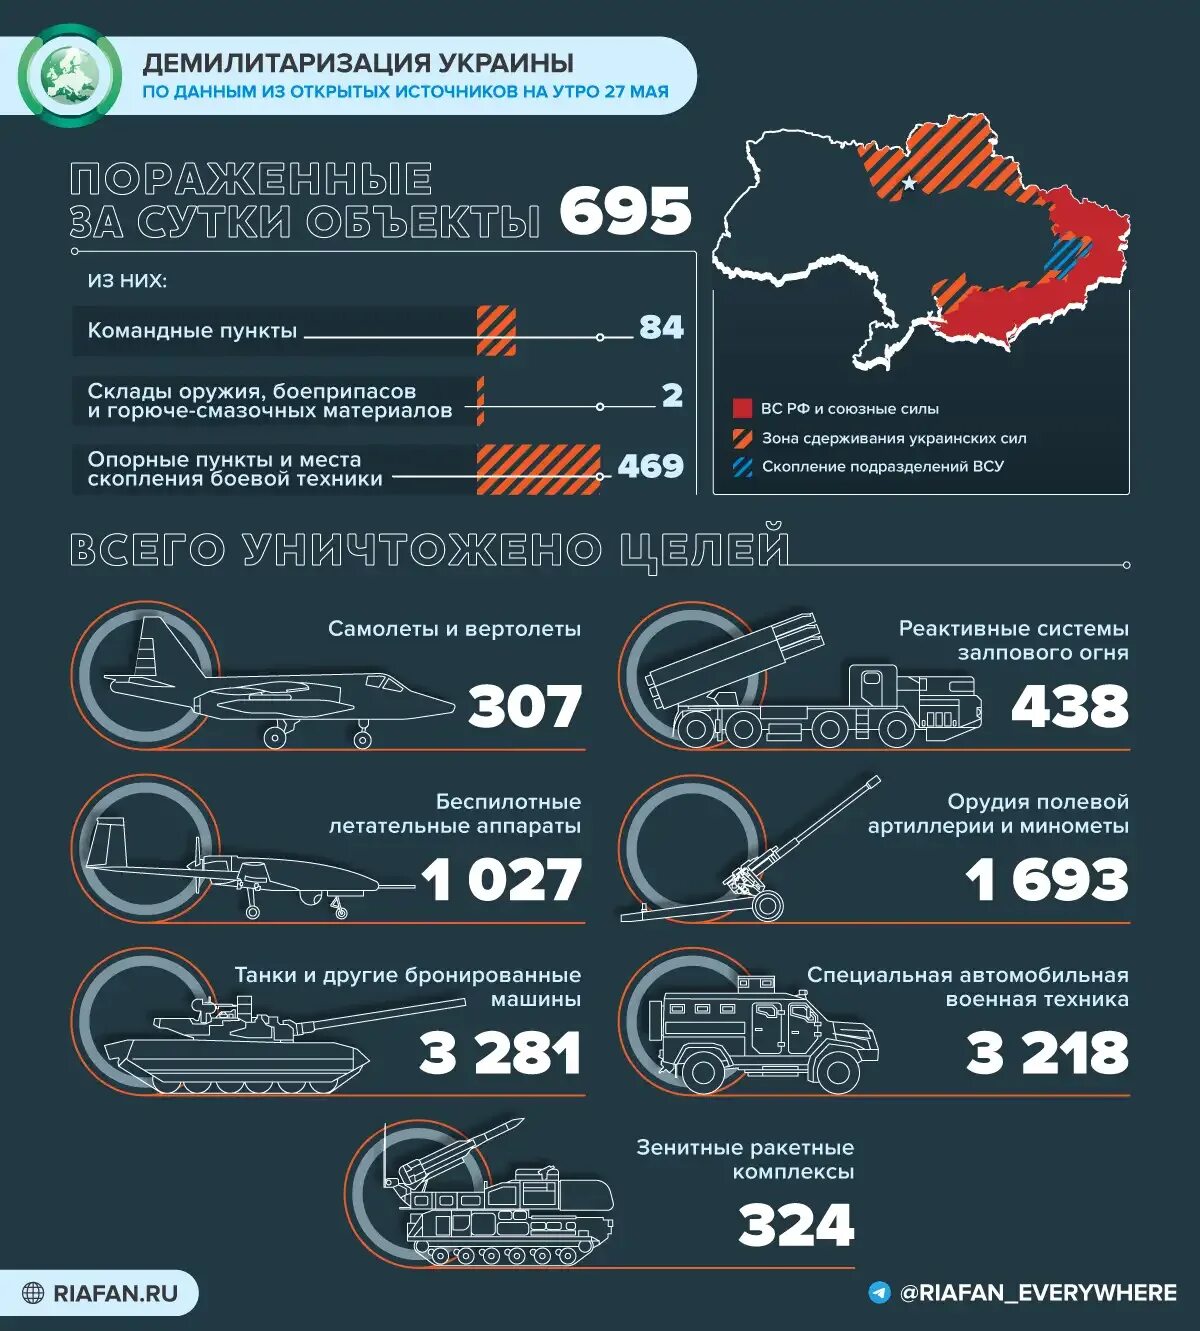 Сколько погибших по данным украины. Поставки оружия на Украину инфографика. Потери Украины инфографика. Потери украинских войск 2022 инфографика.